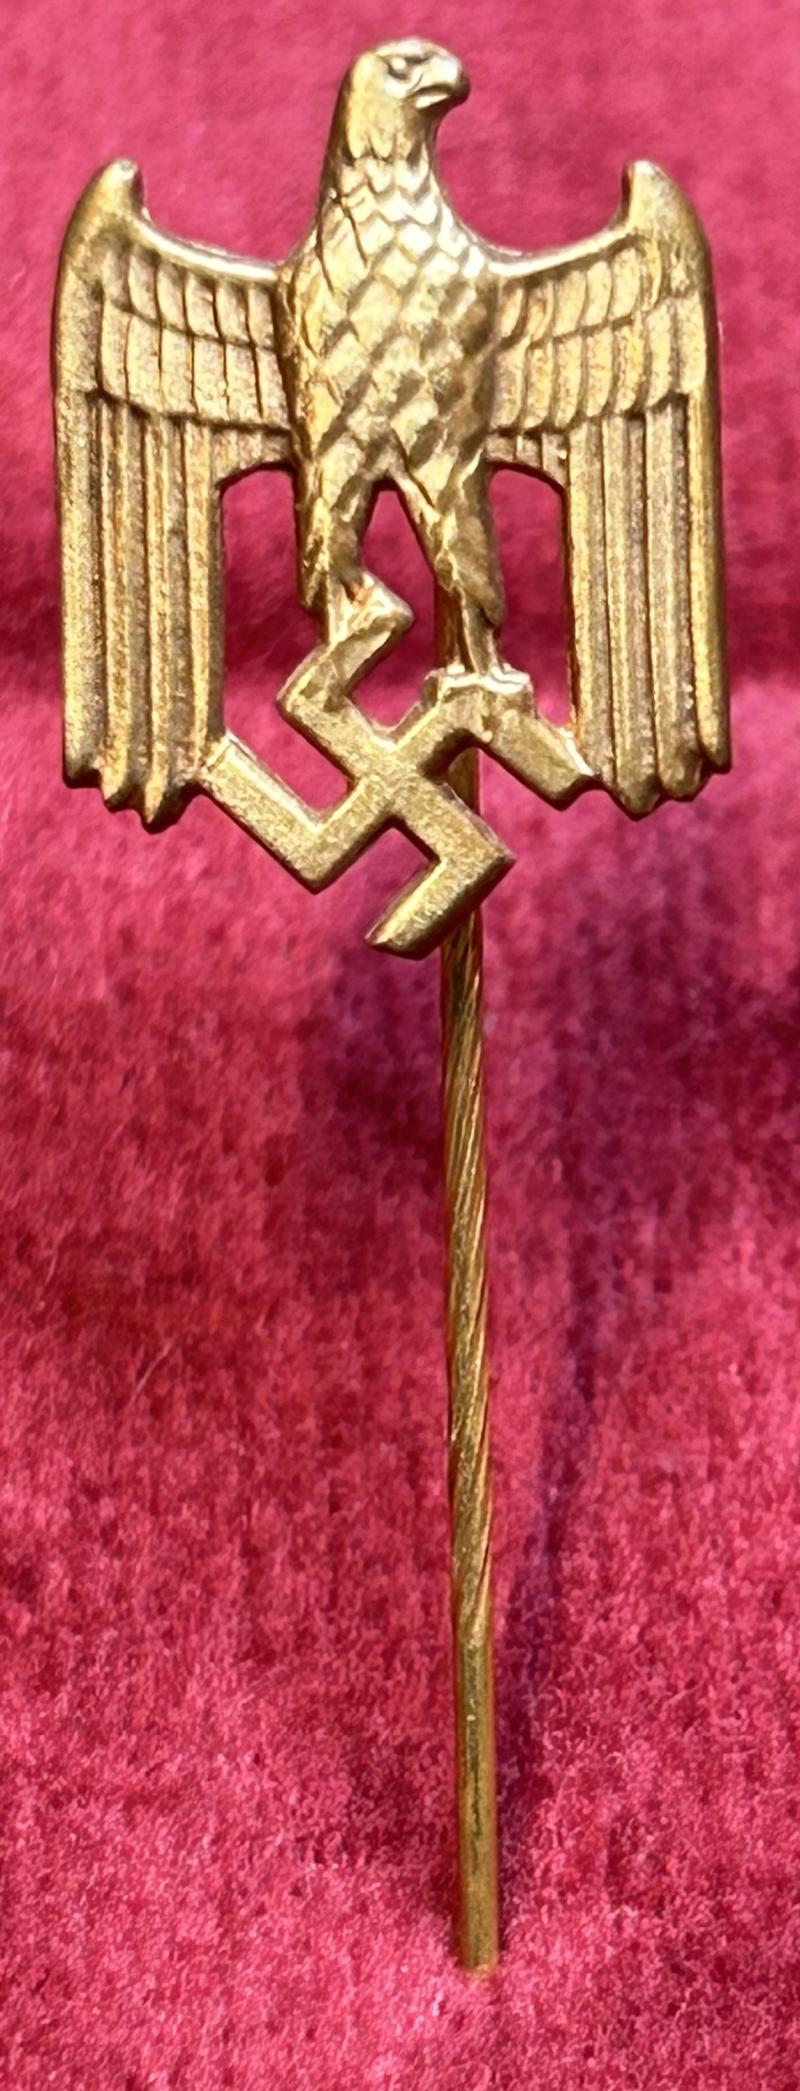 3rd Reich Golden zivilabzeichen der kriegsmarine